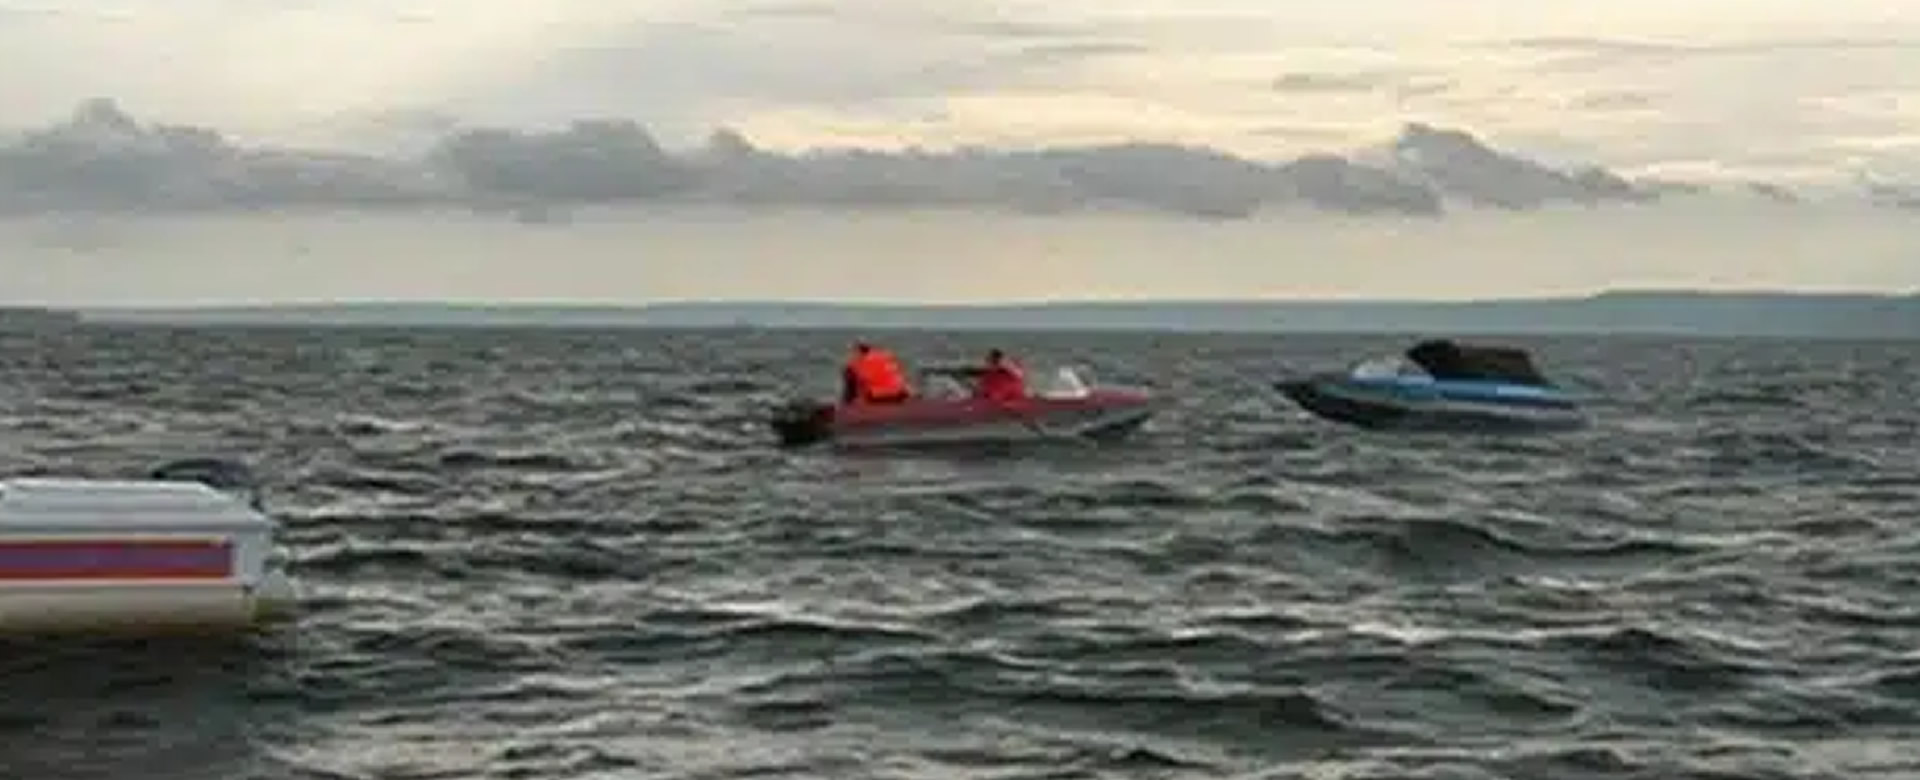 migrantes muere naufragio panamá